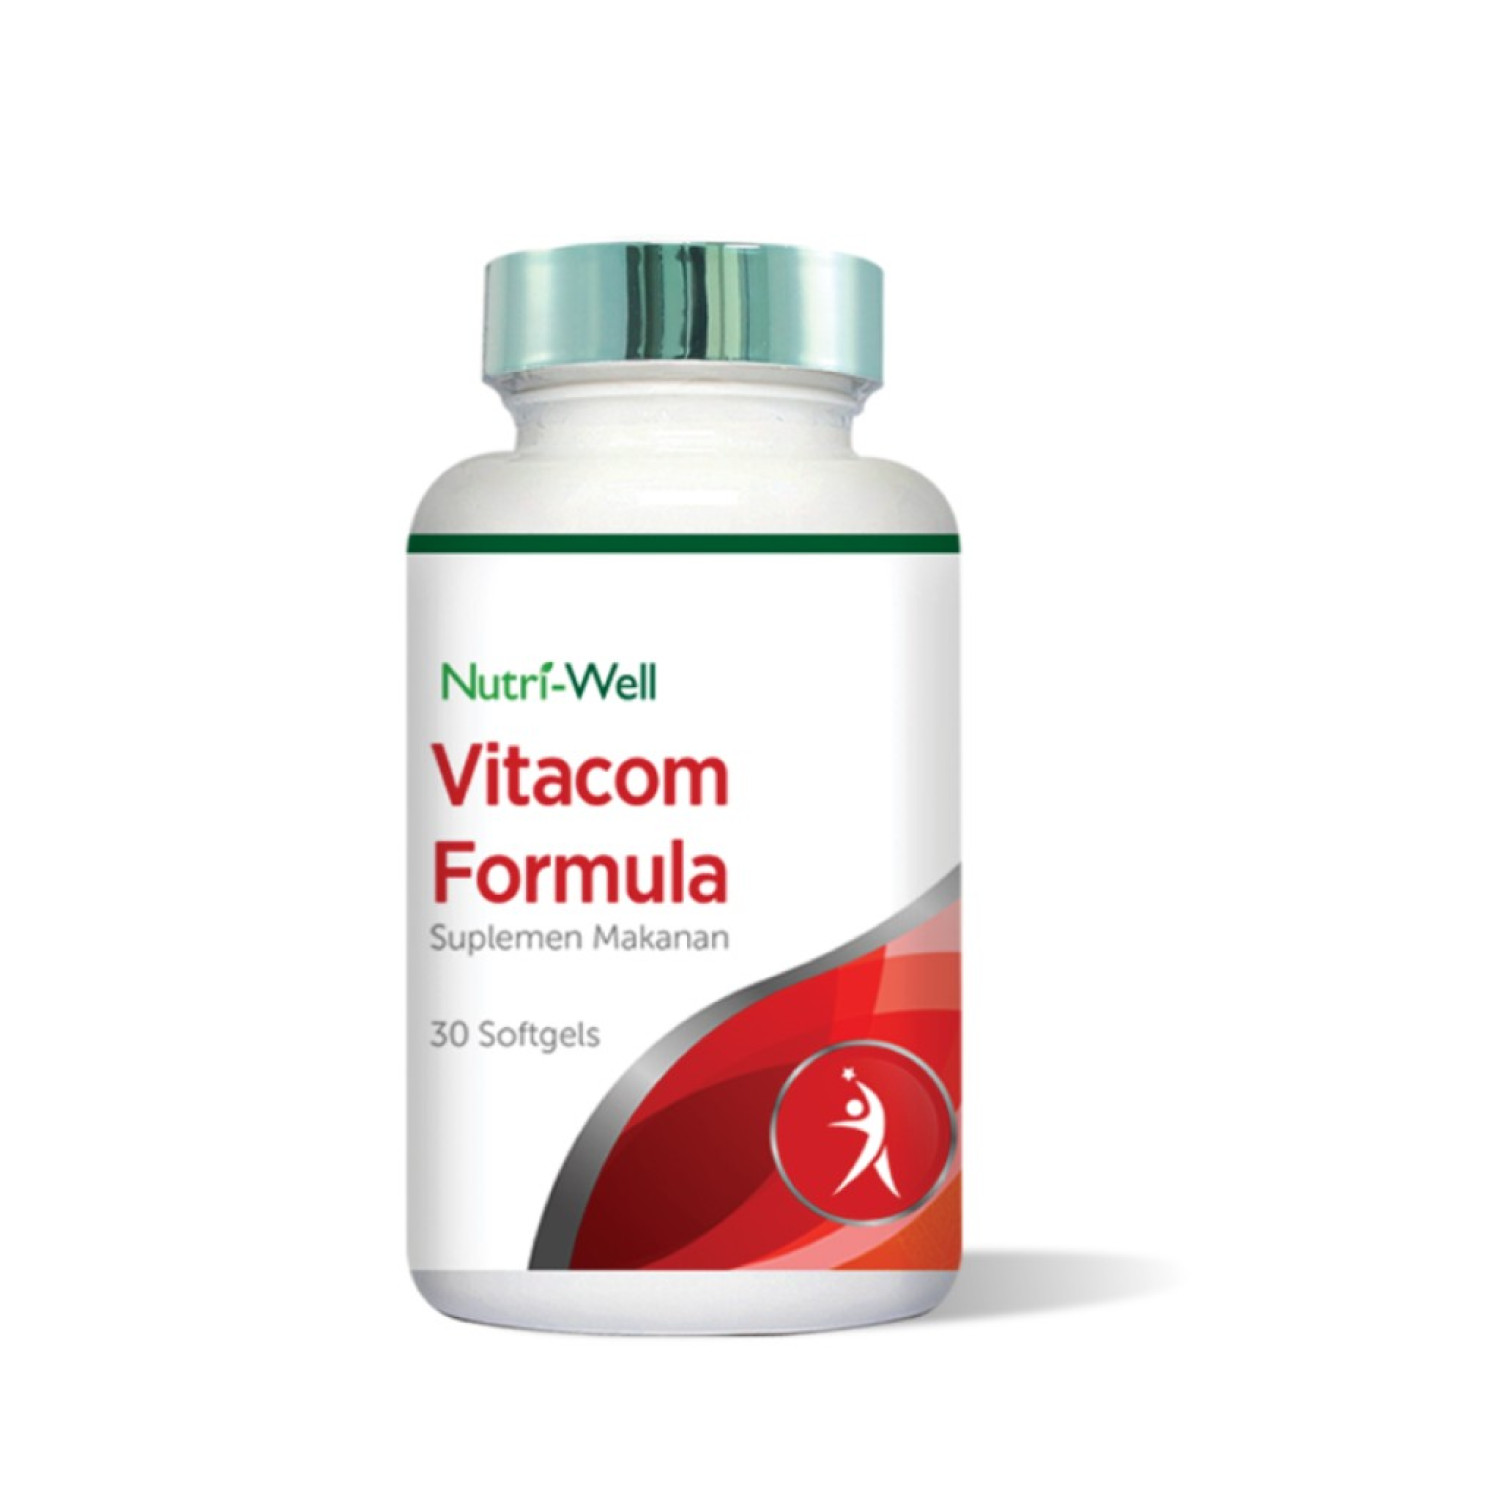 nutriwell-vitacom-formula-30-softgels-6543229ae6f7a.jpeg